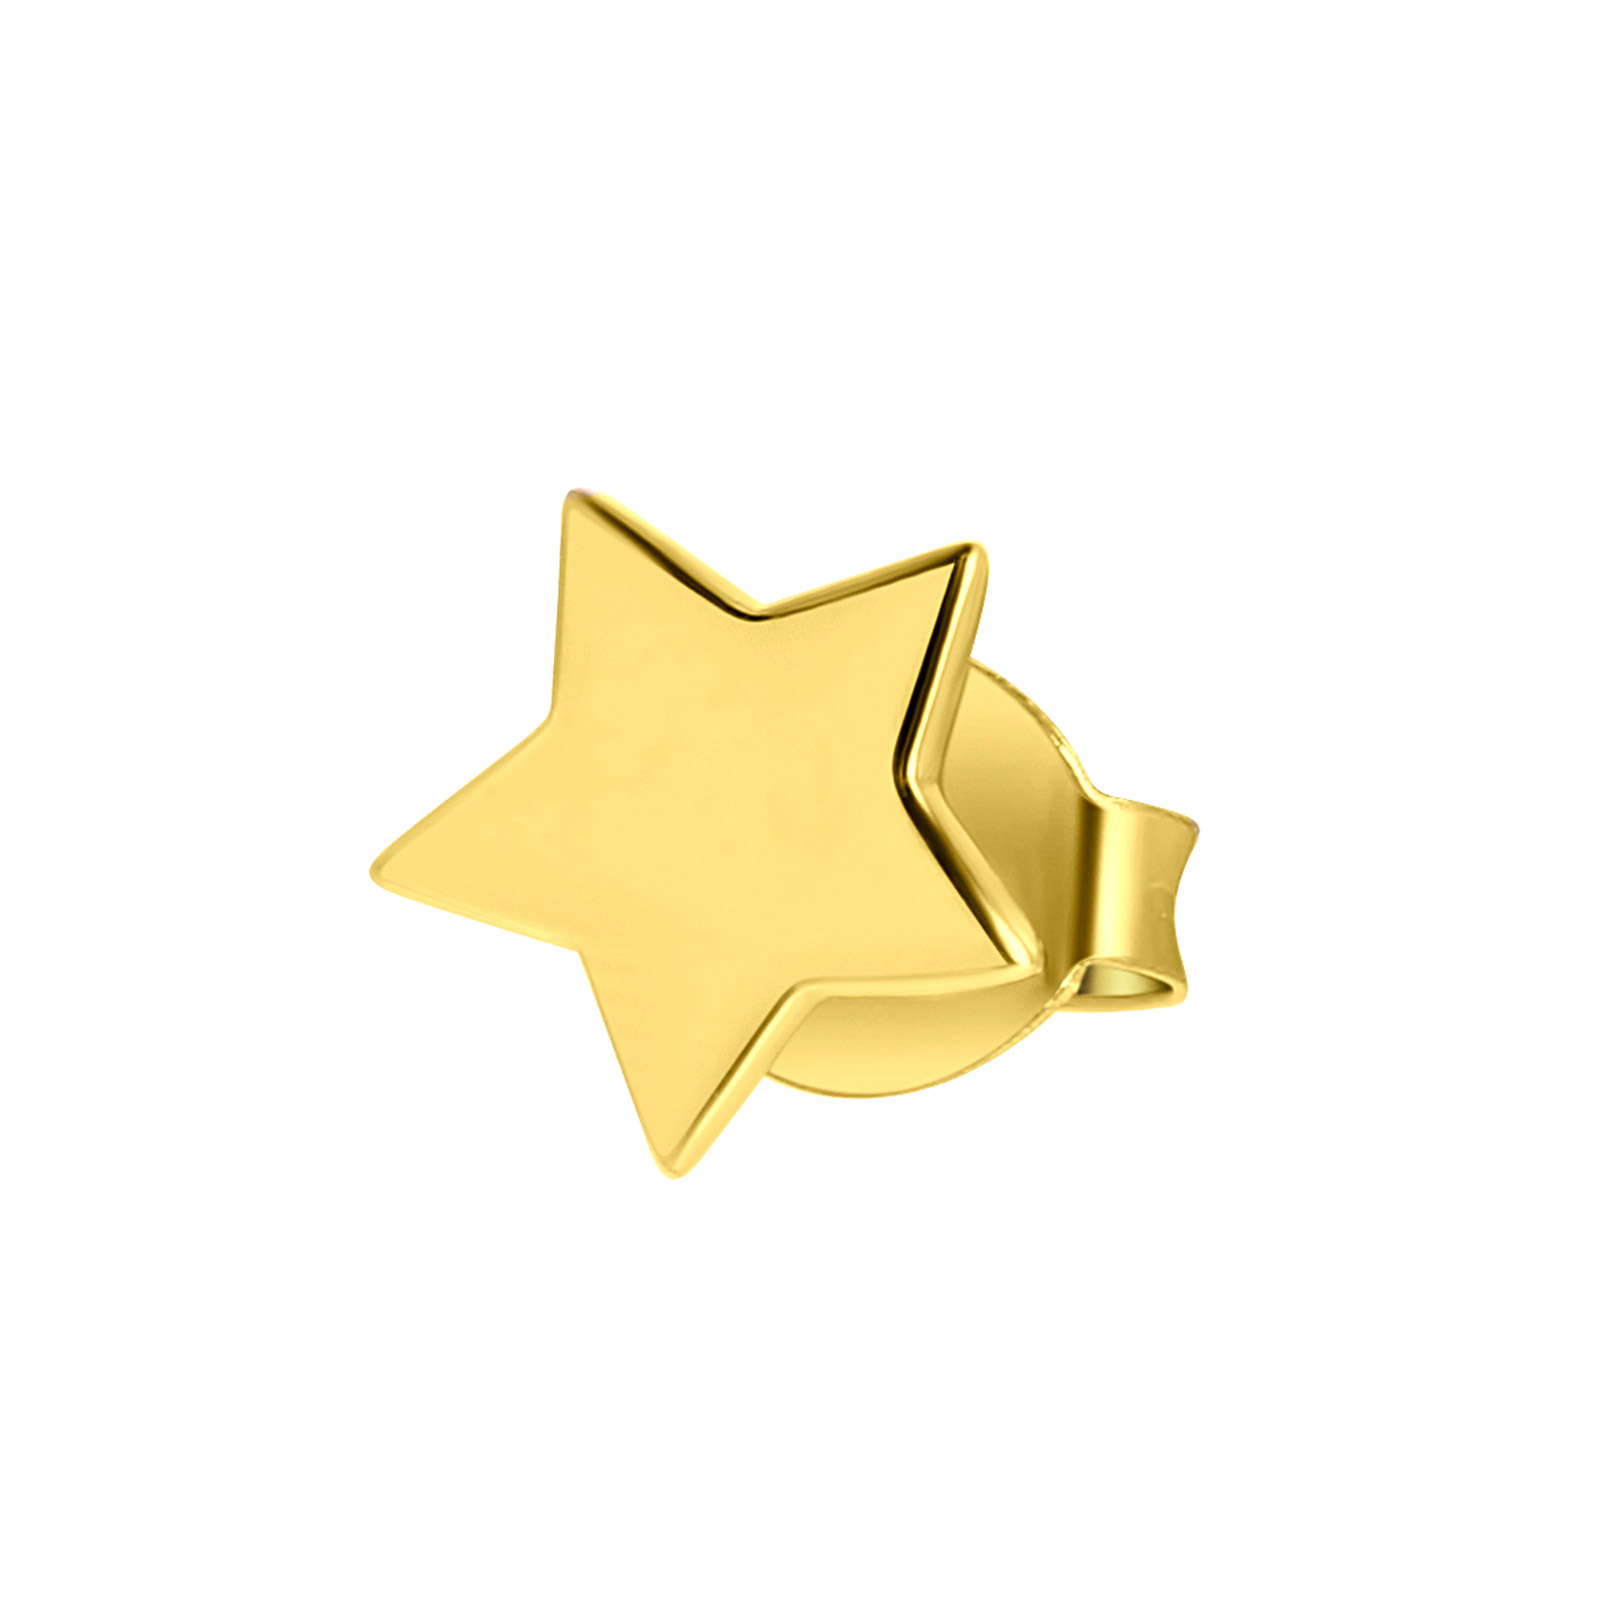 Guldfärgat örhänge 925 Sterling Silver - Stjärna